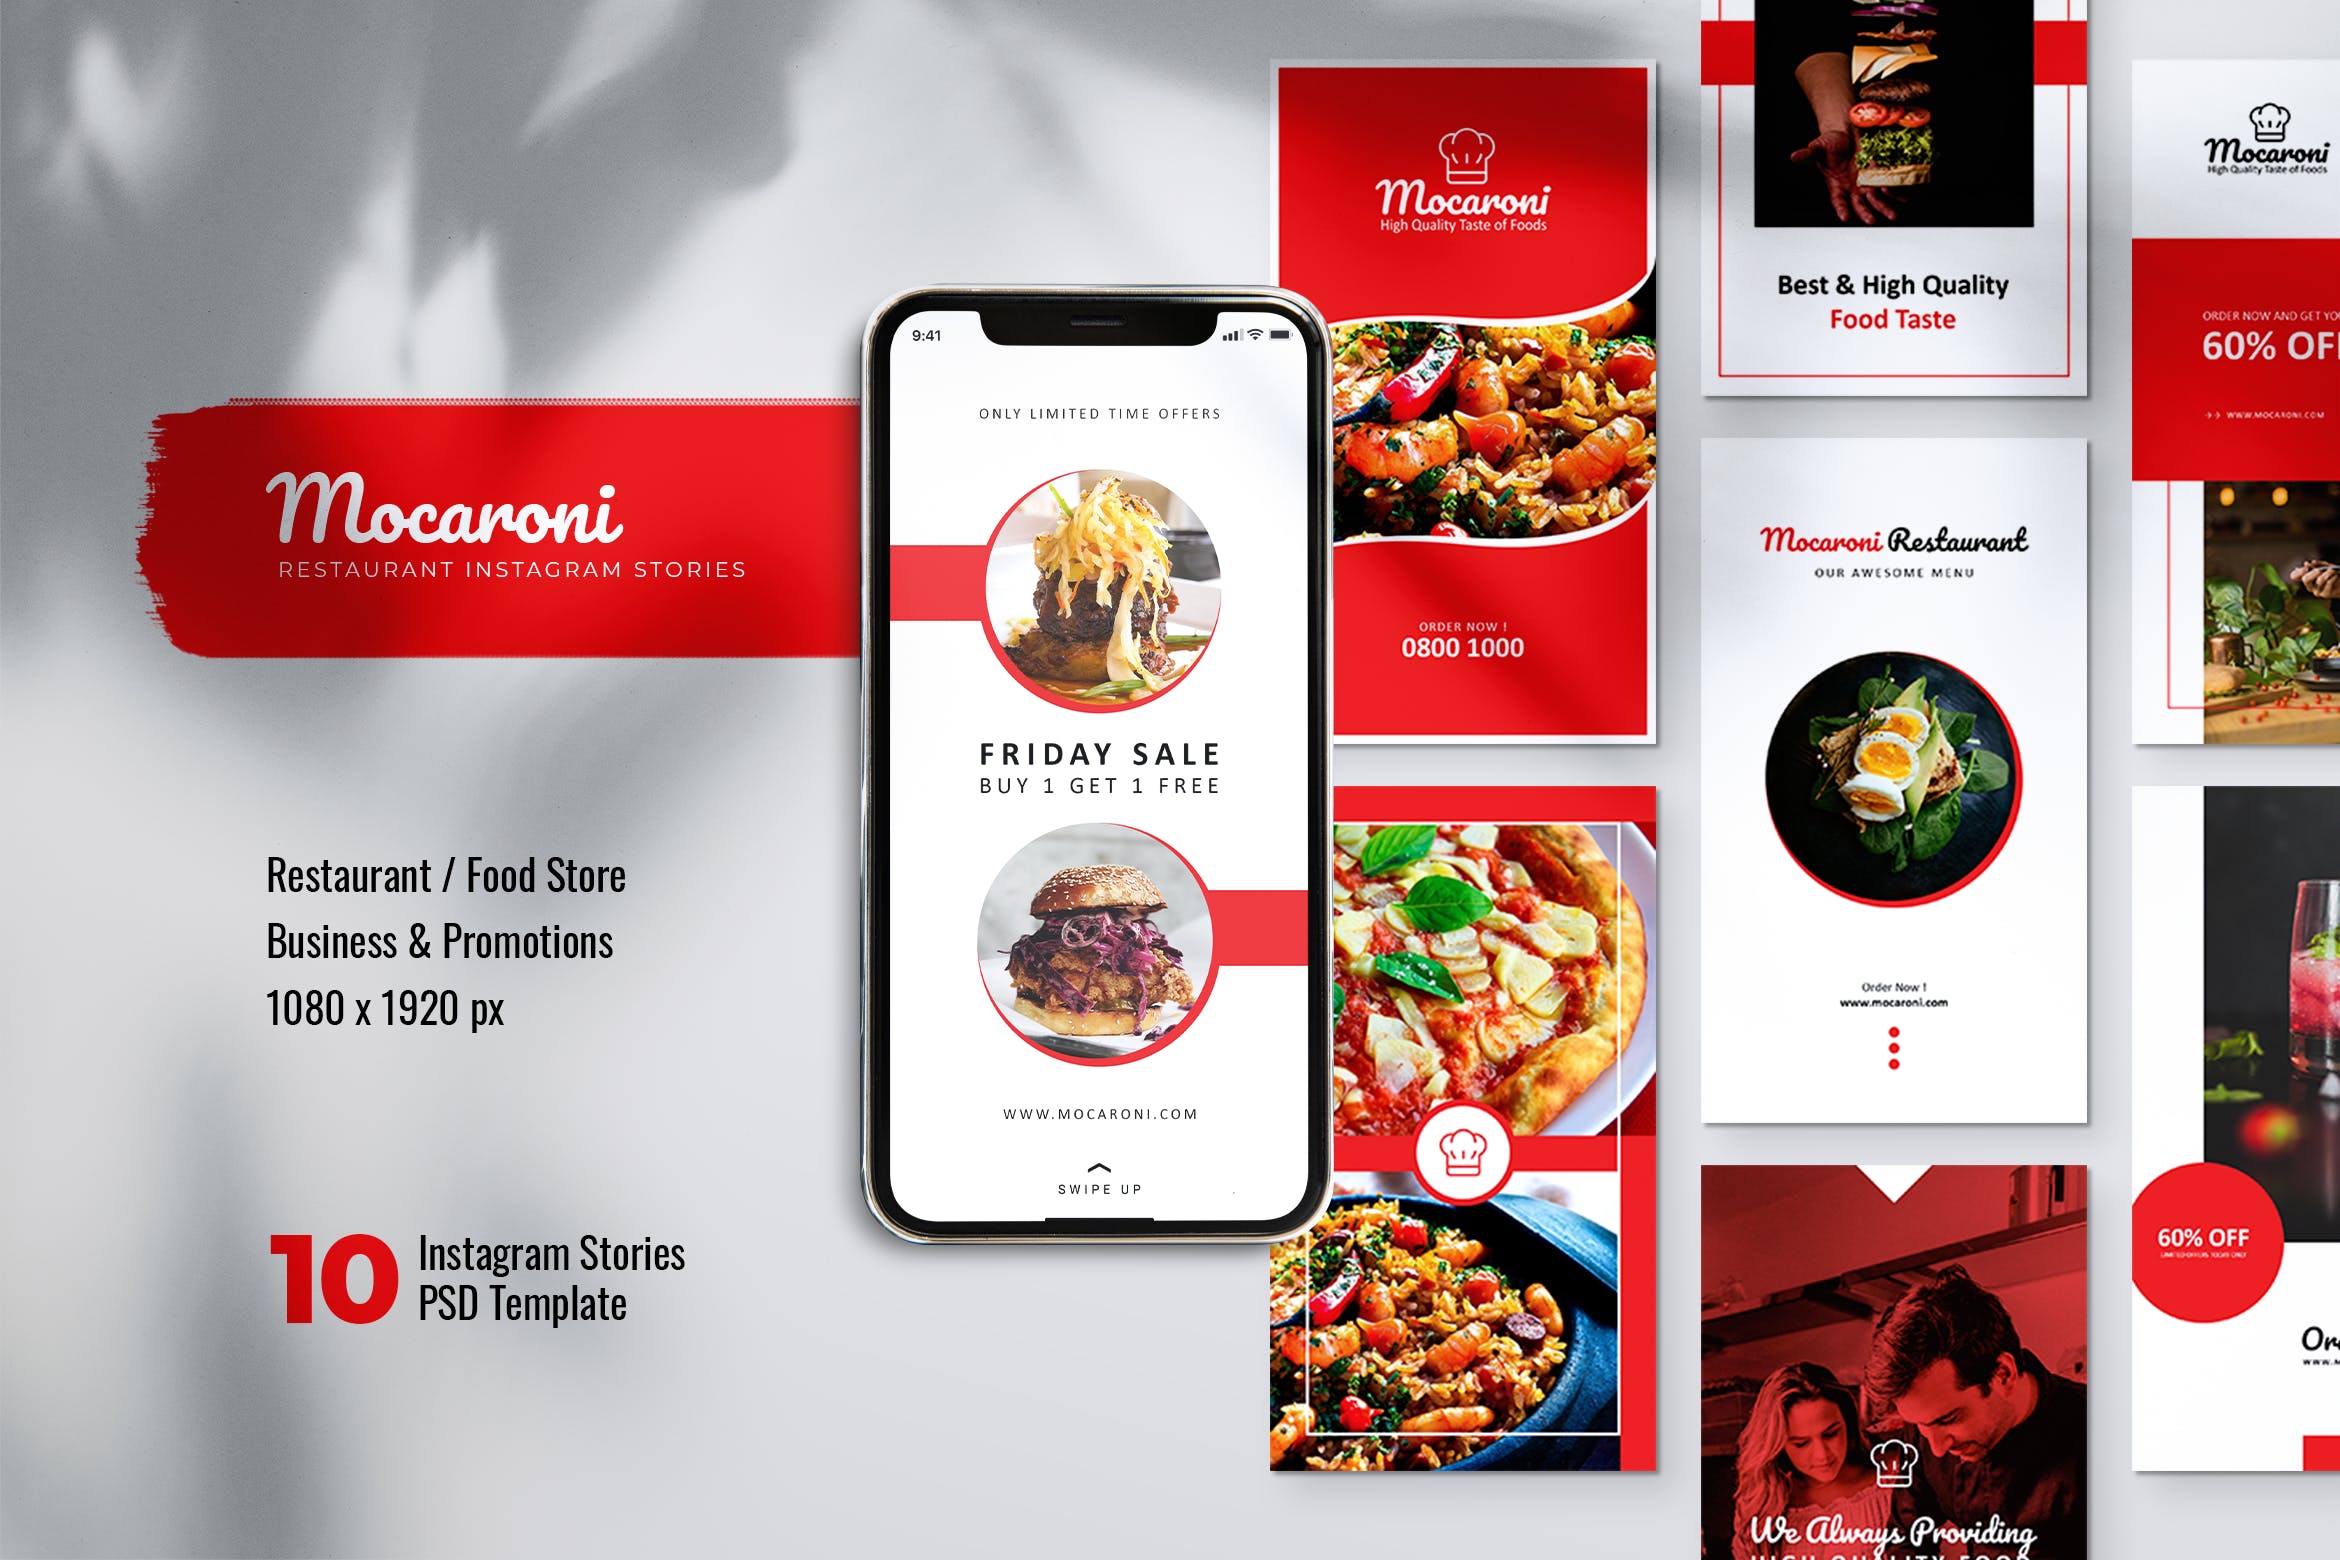 餐馆美食主题Instagram&Facebook社交品牌宣传图片设计PSD模板16设计网精选 MOCARONI Restaurant/Food Store Instagram Stories插图